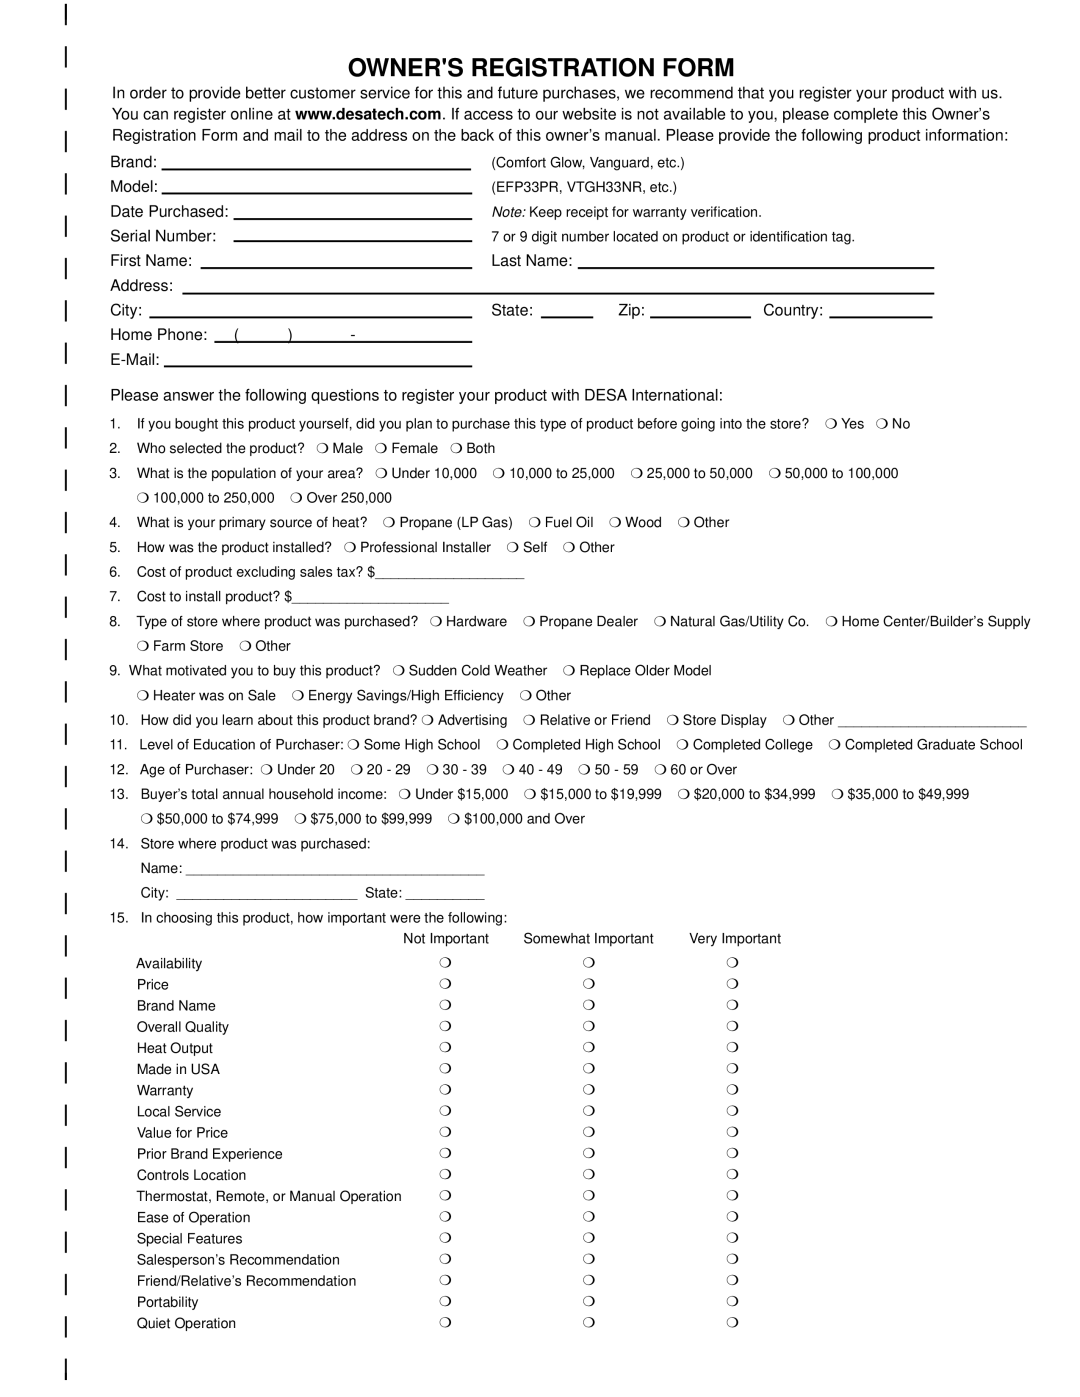 Desa REM10PT installation manual Owners Registration Form 